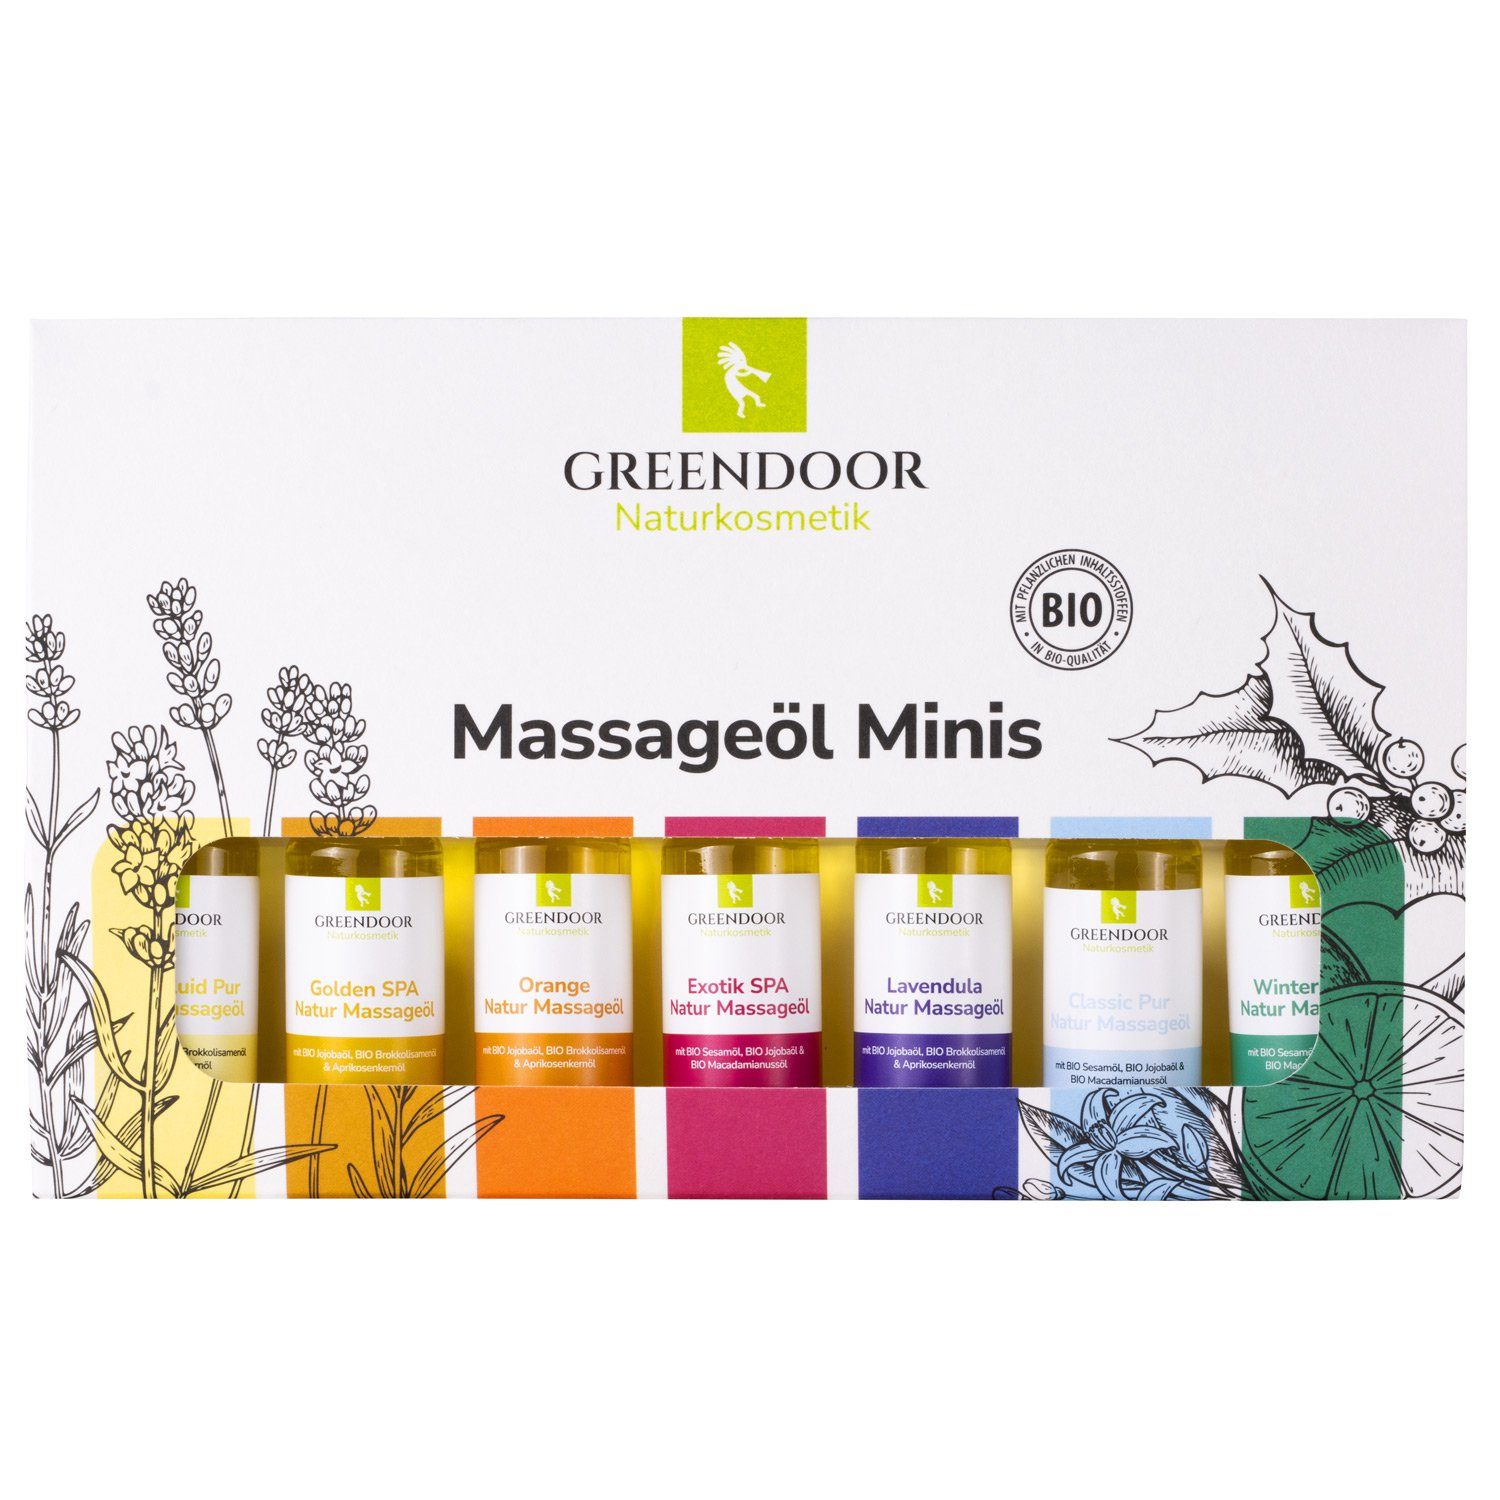 Minis als Massageöl GREENDOOR Sortiment Massageöl